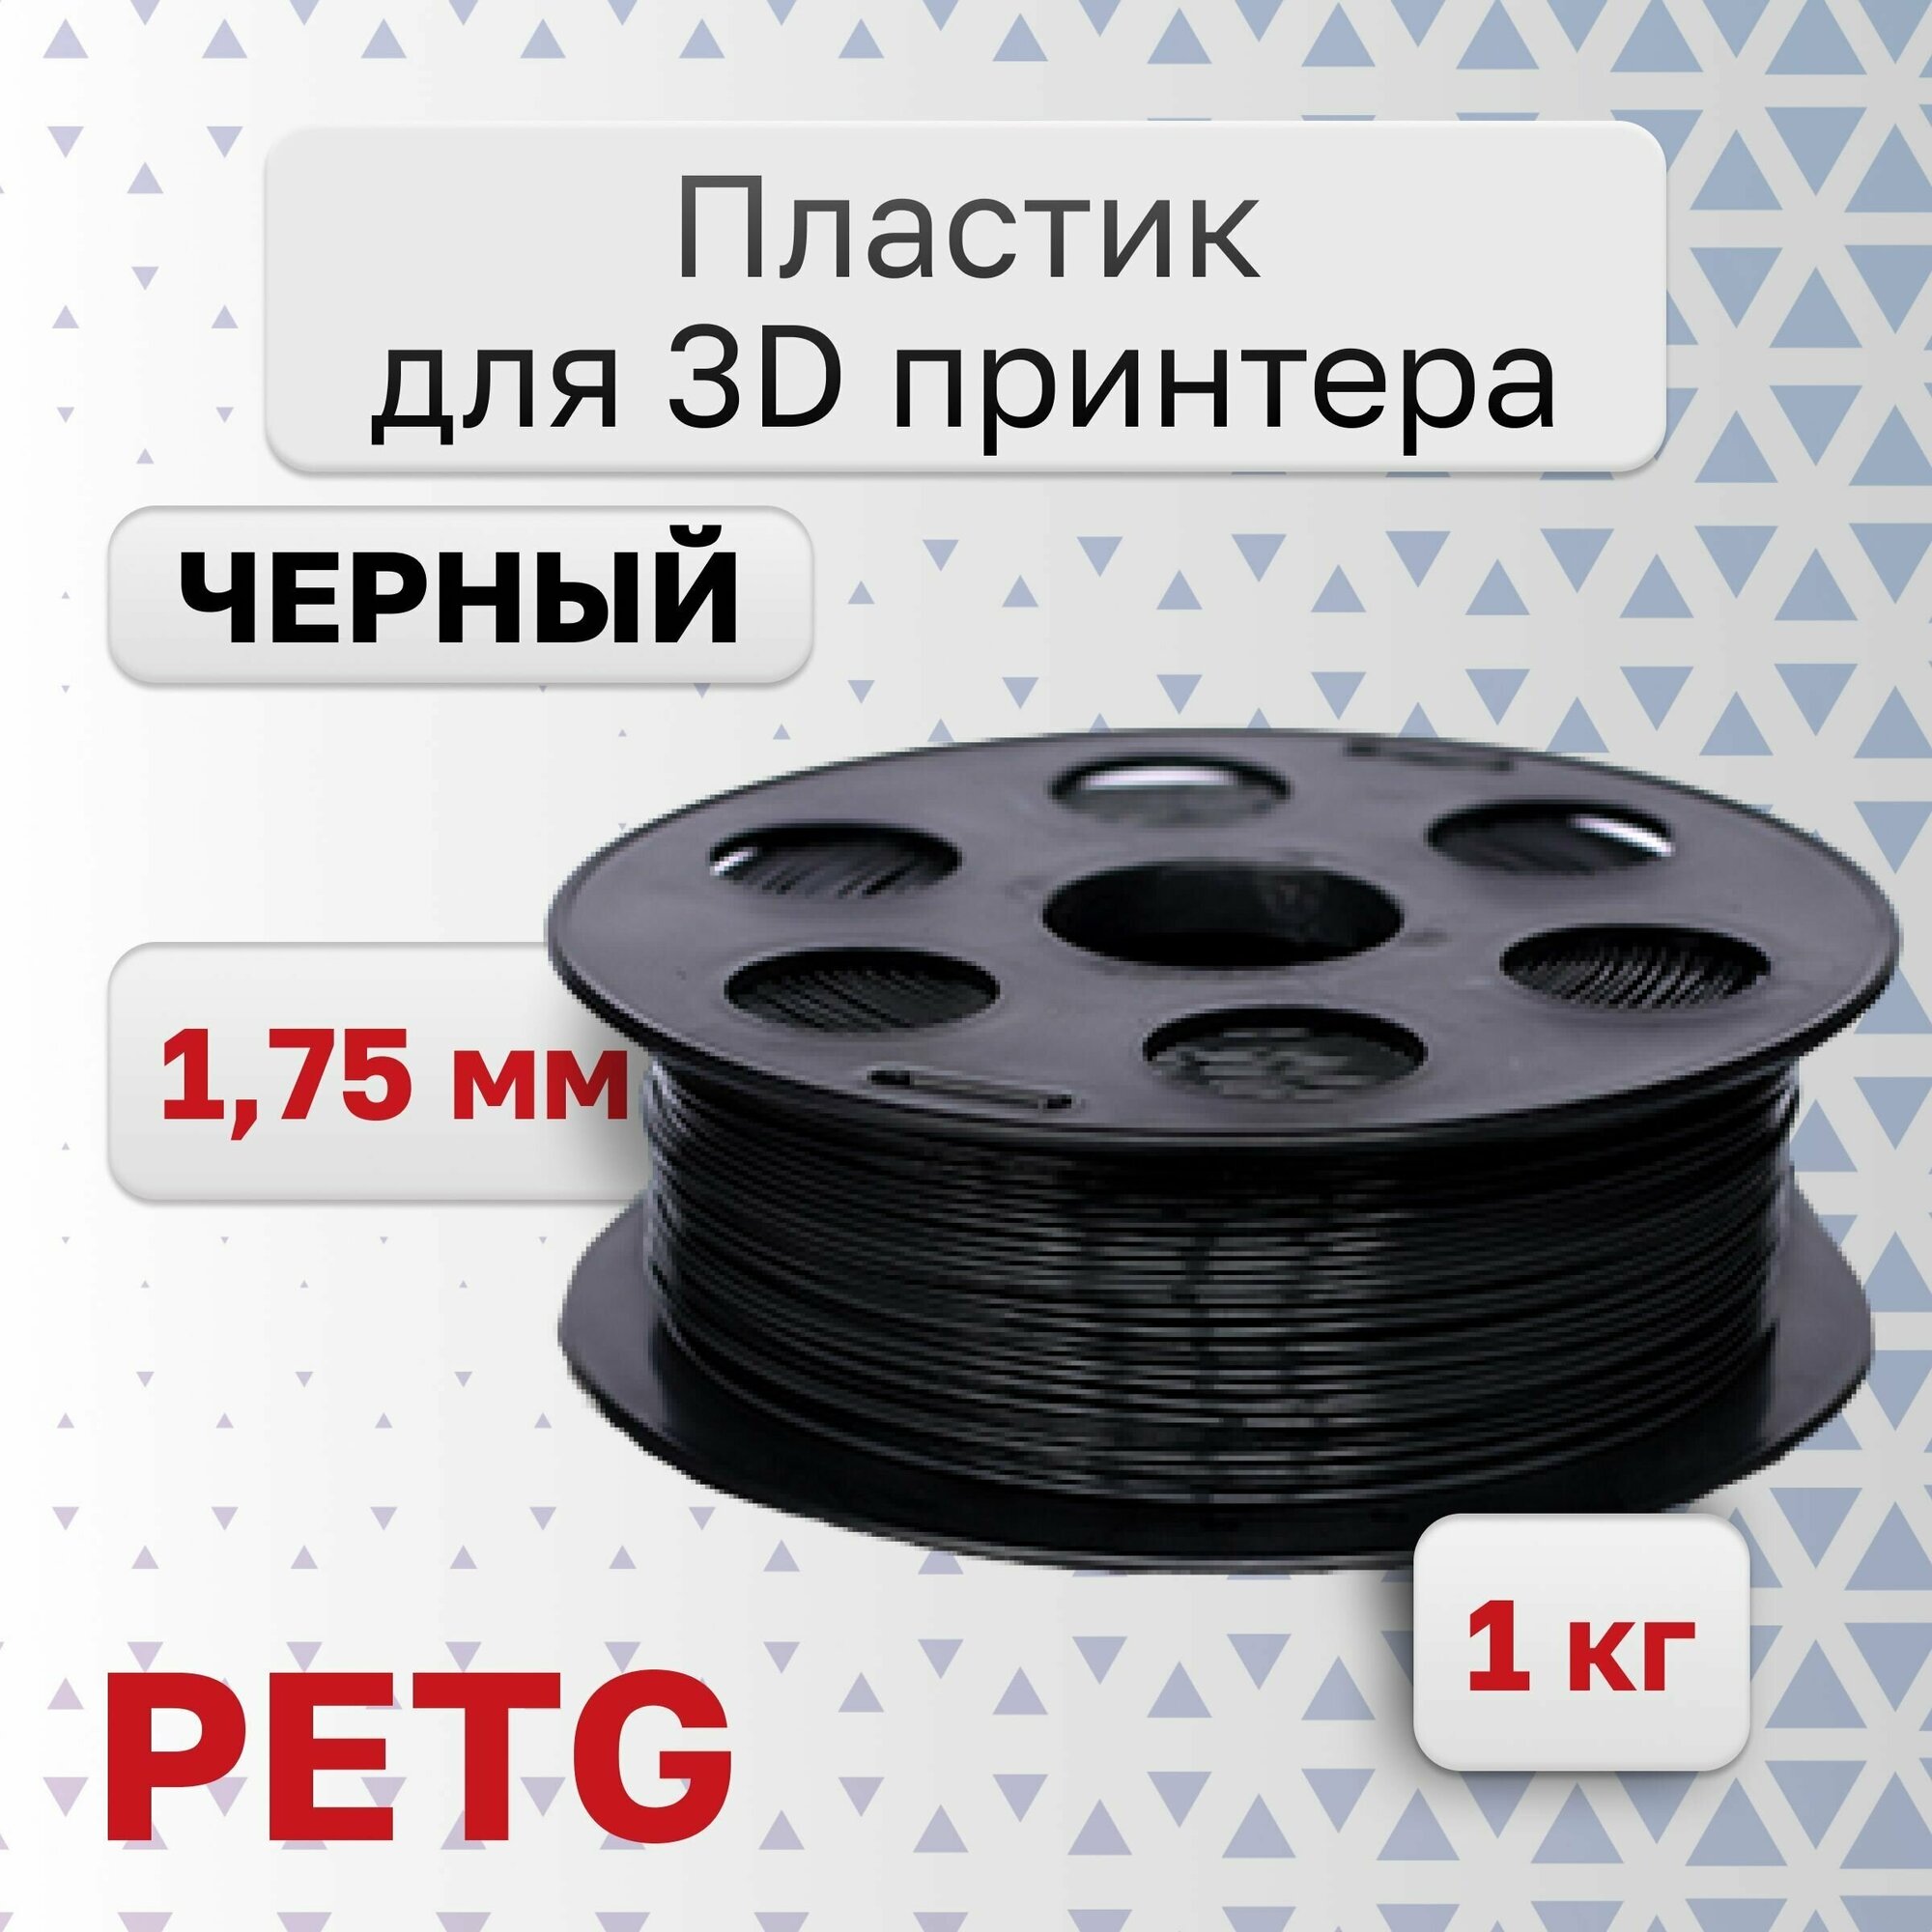 Volprint PETG 1.75мм 1кг для 3D принтера